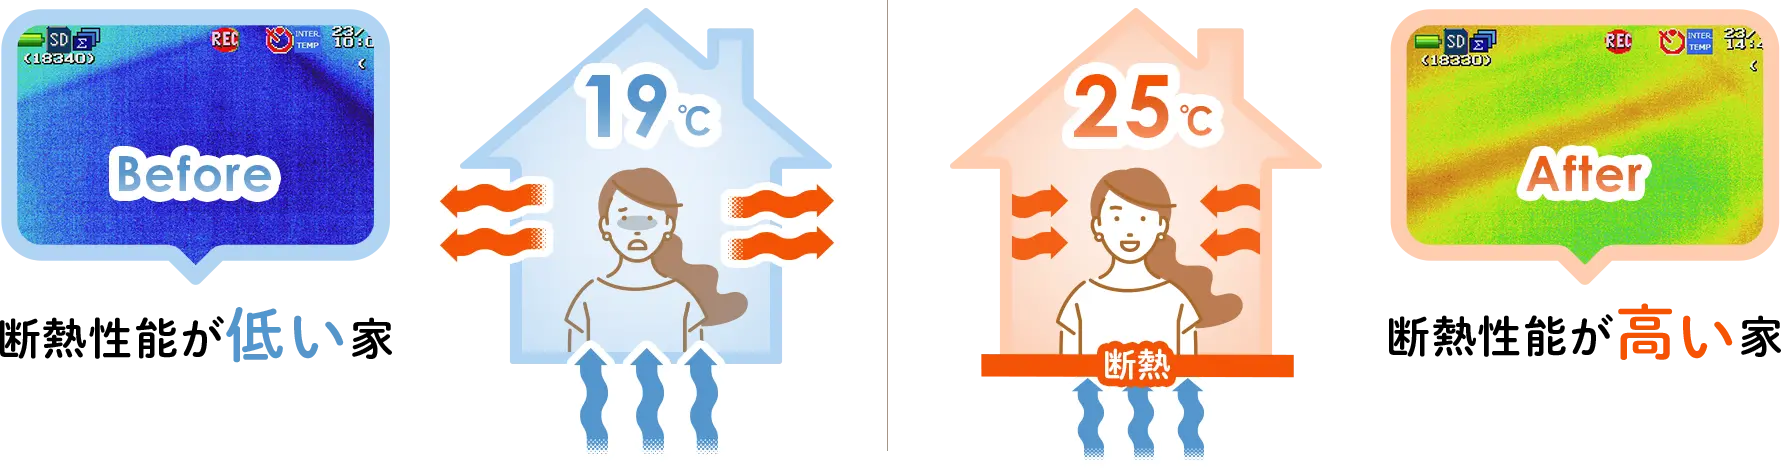 断熱性能が低い家と断熱性能が高い家の比較イラスト